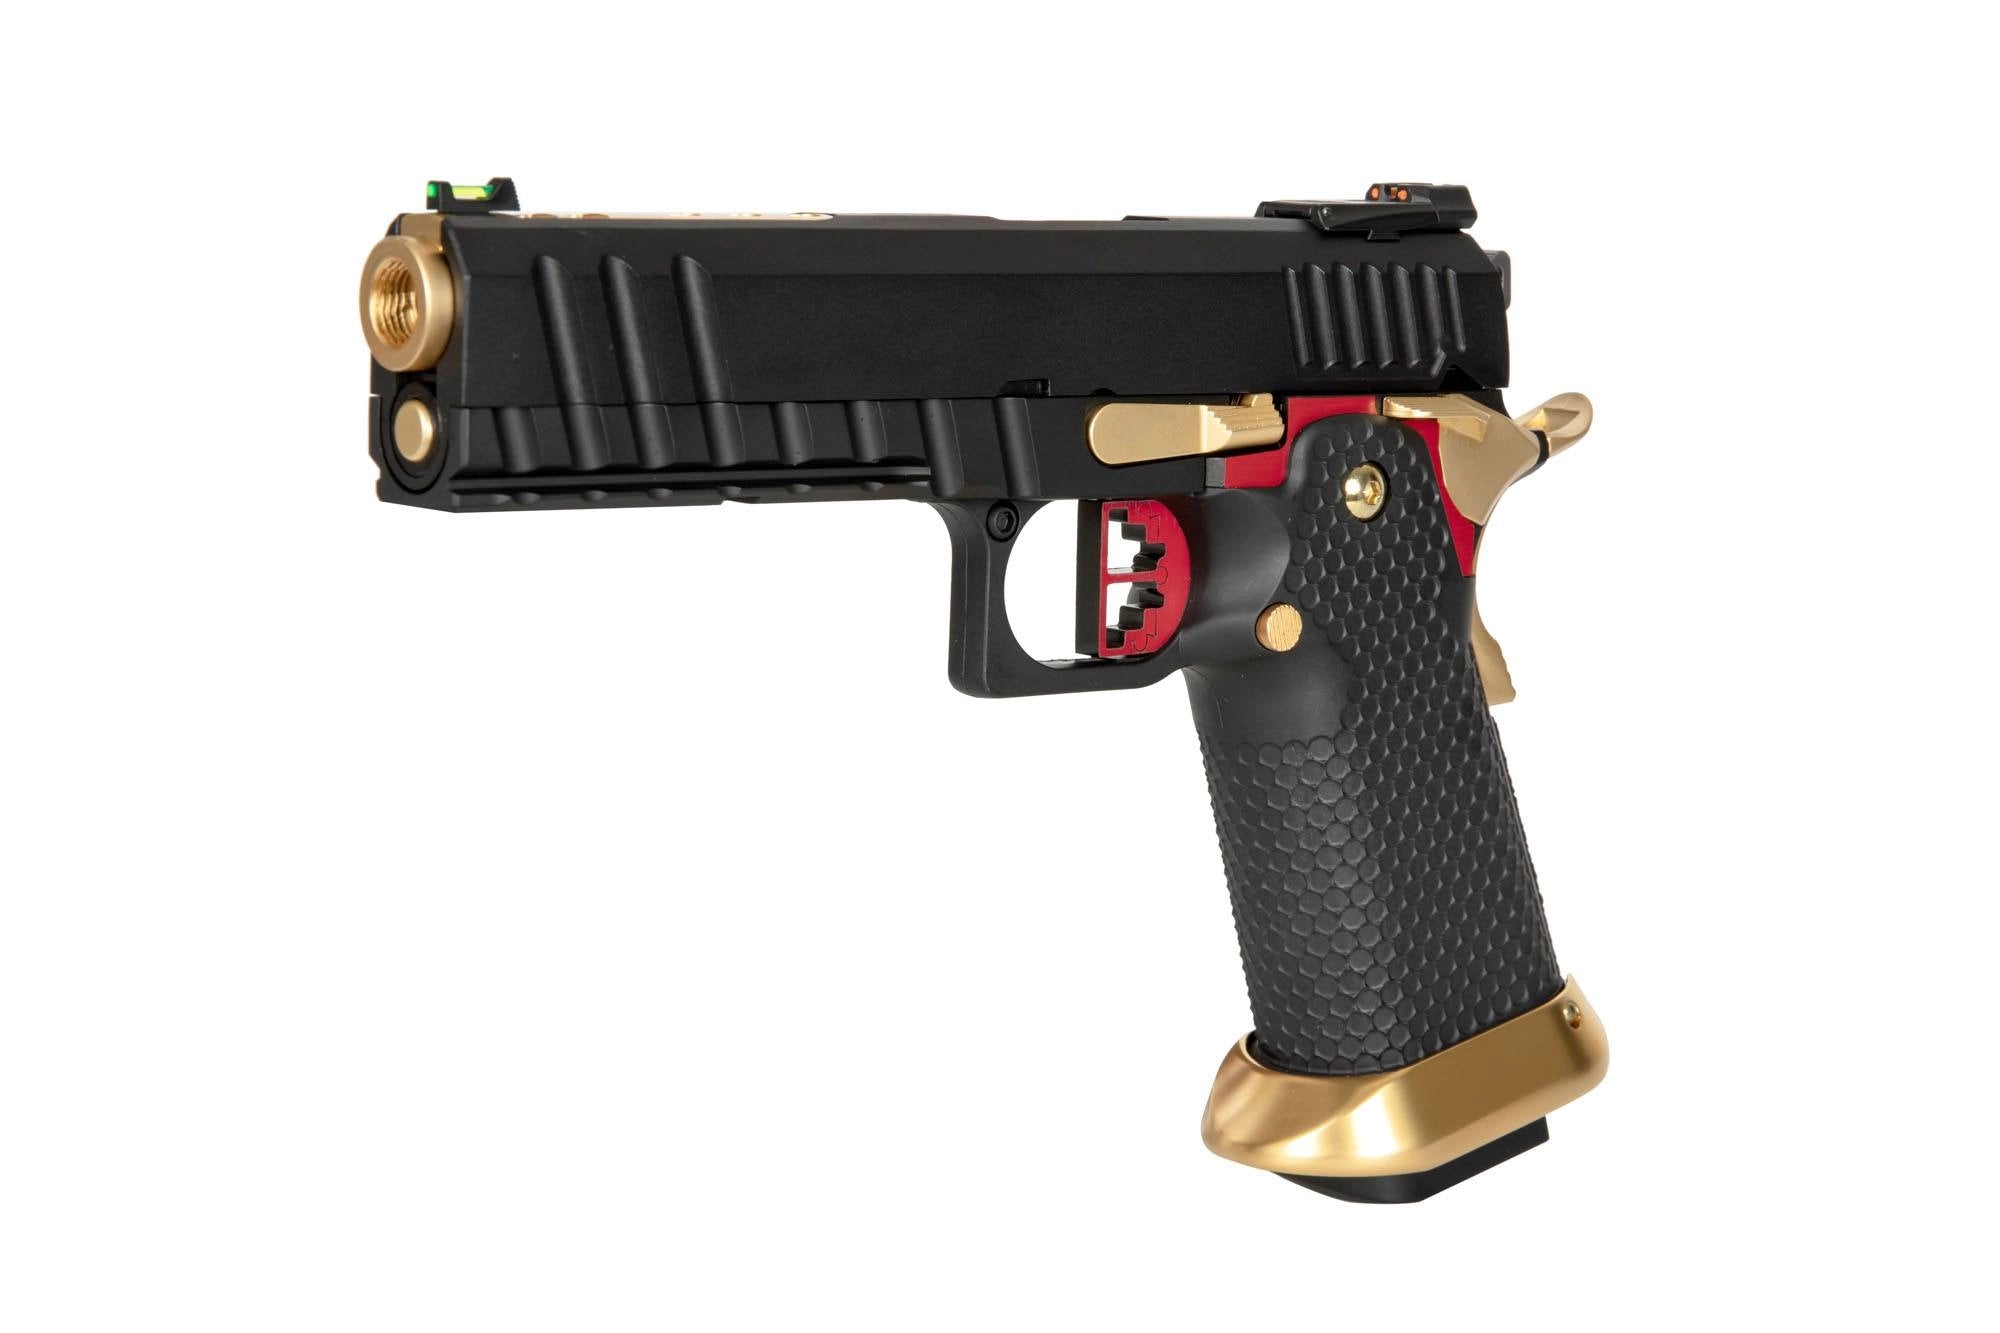 AW-HX2032 pistol replica-1